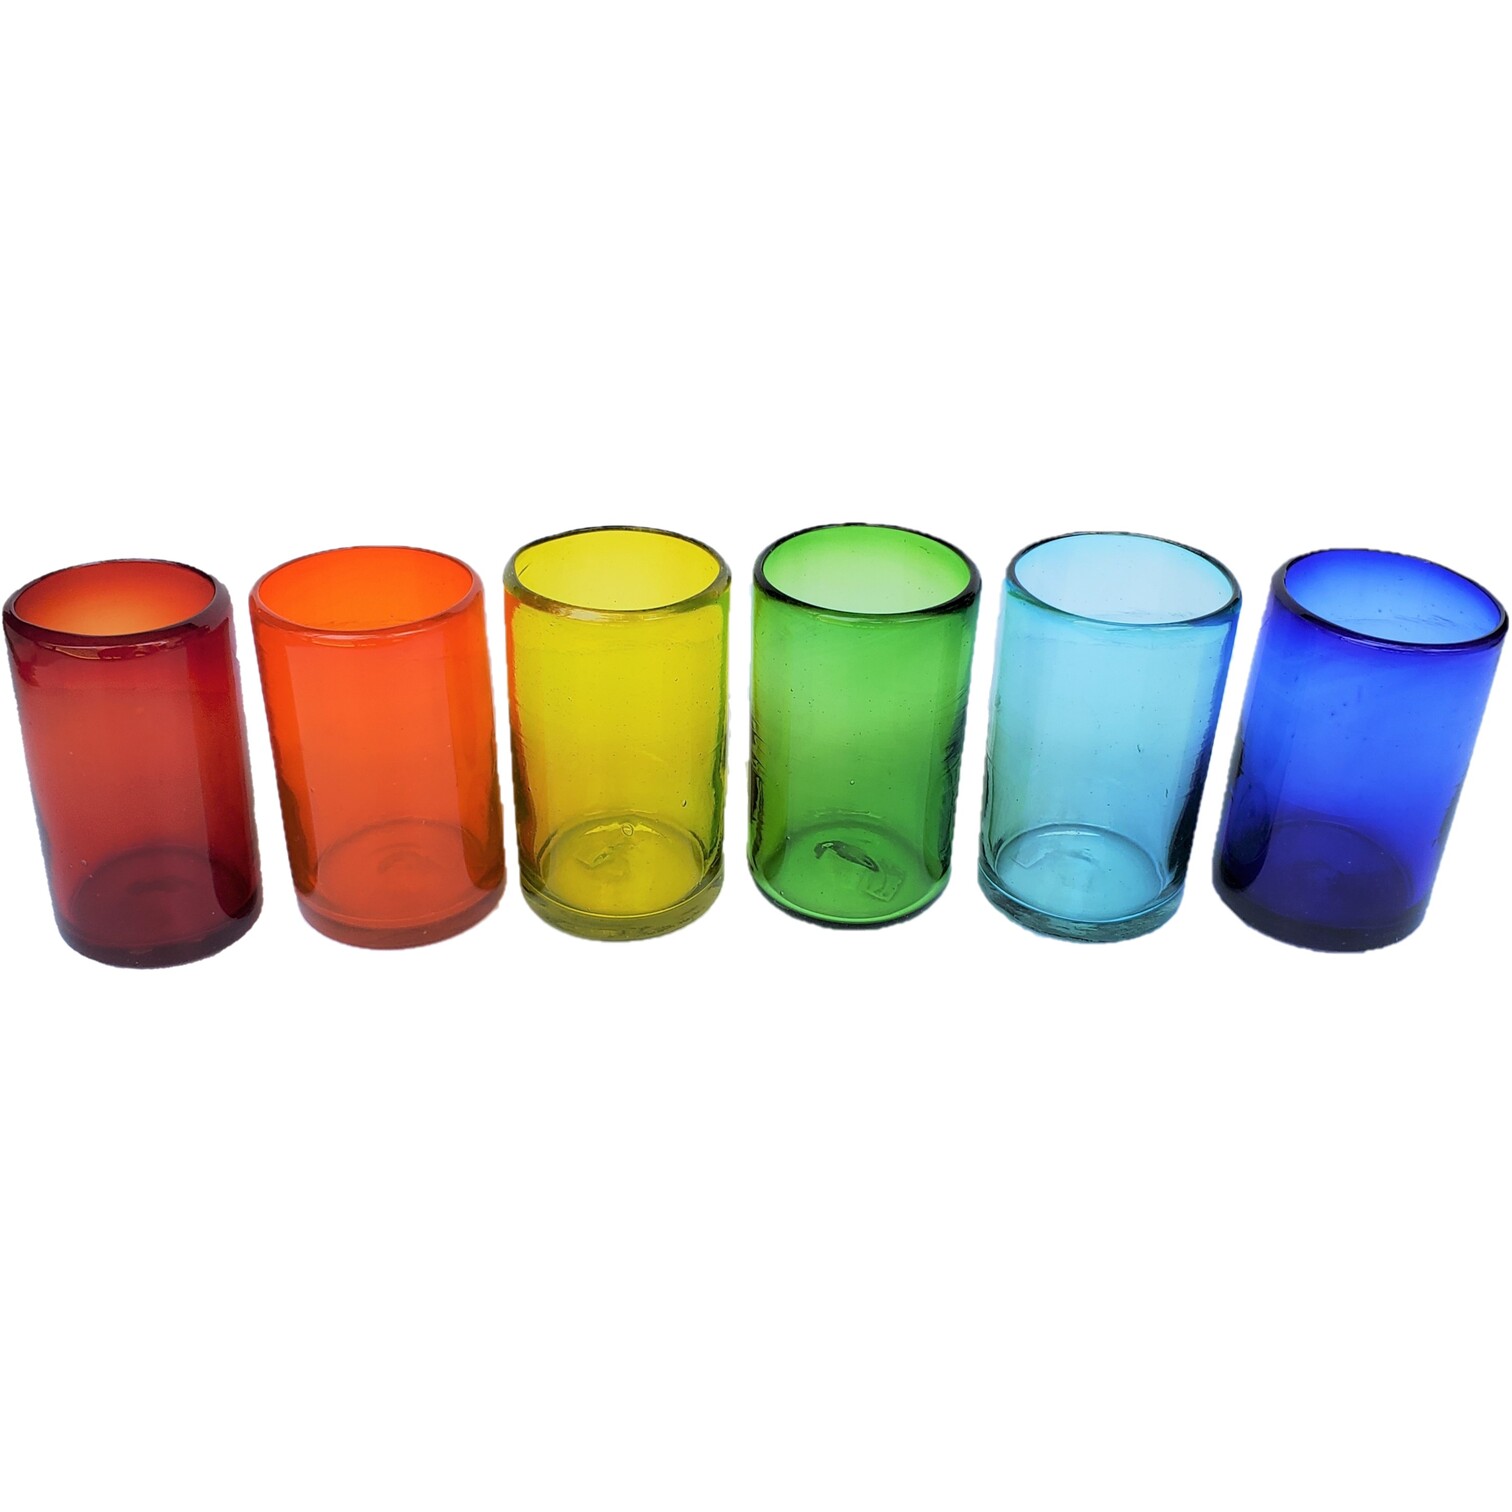 VIDRIO SOPLADO / vasos grandes de colores Arcoris, 14 oz, Vidrio Reciclado, Libre de Plomo y Toxinas